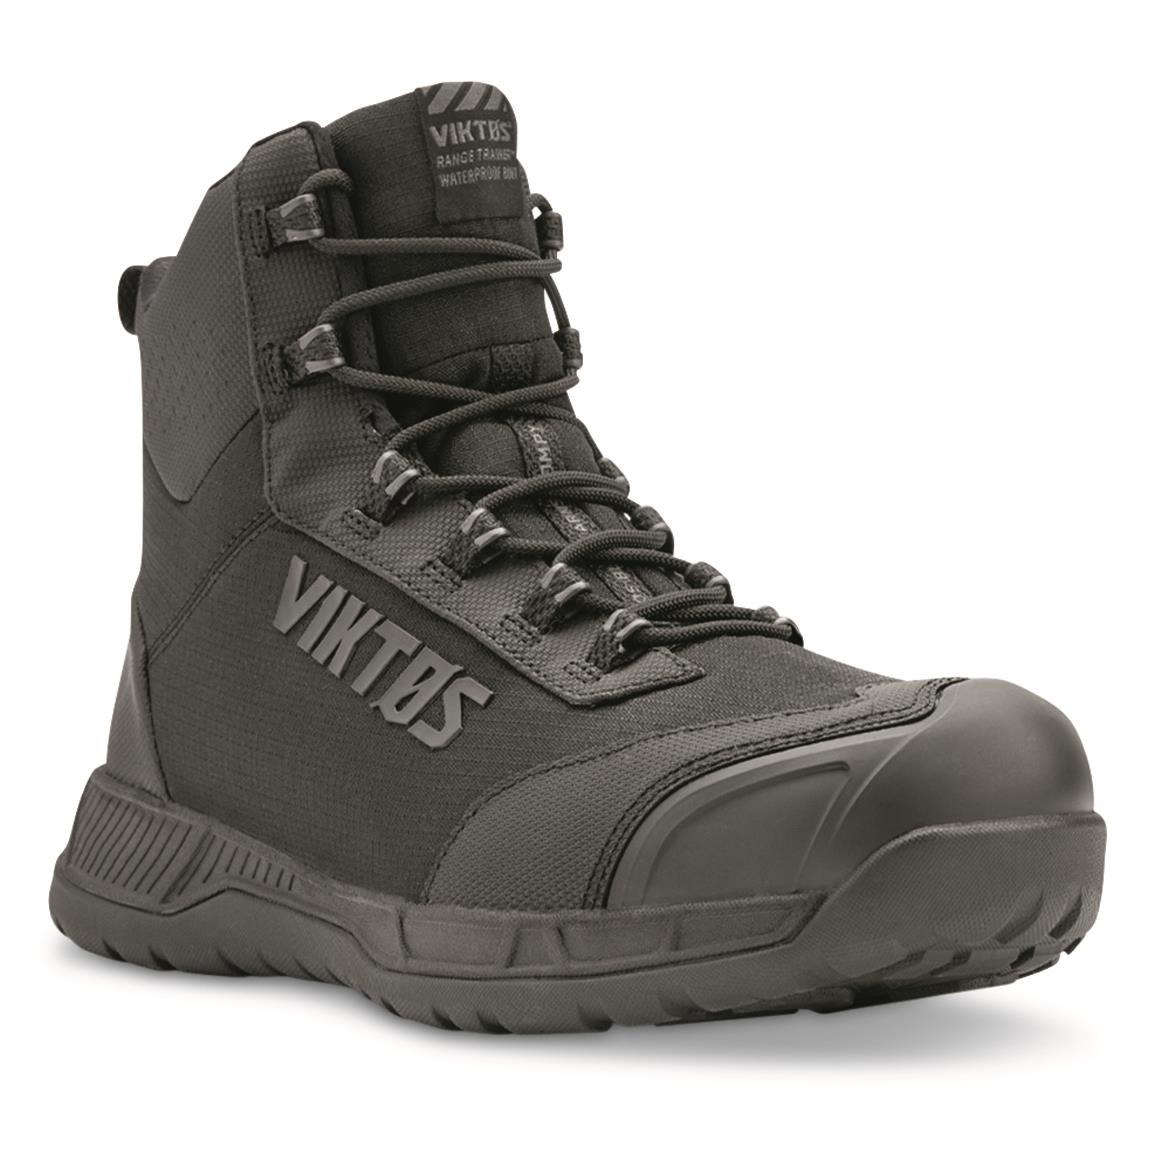 Viktos Men's Range Trainer Waterproof Mid Tactical Boots, Nightfjall